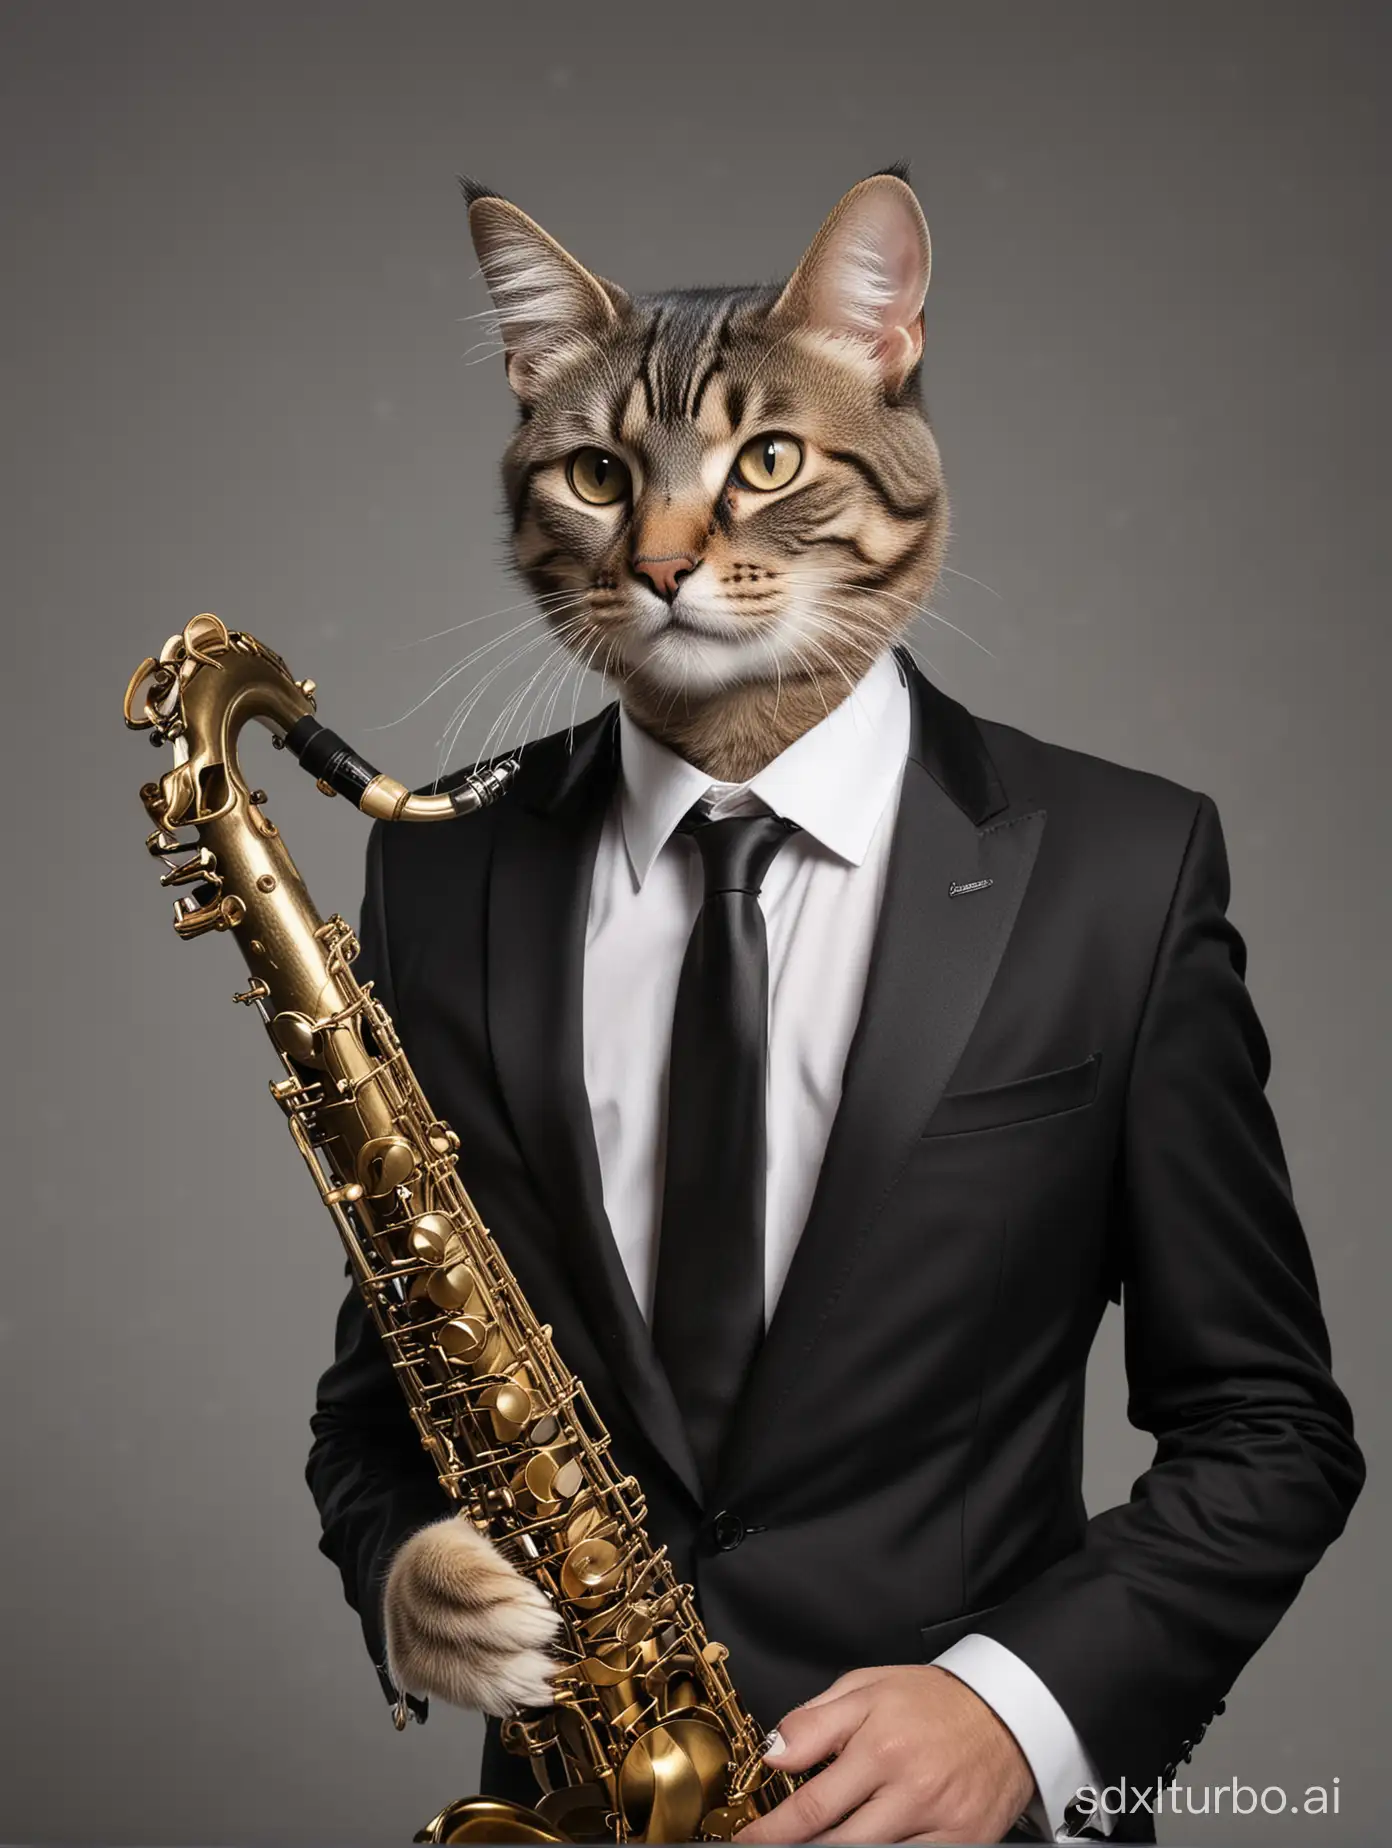 Sleek-Cat-in-Black-Suit-Playing-Jazz-Tenor-Saxophone